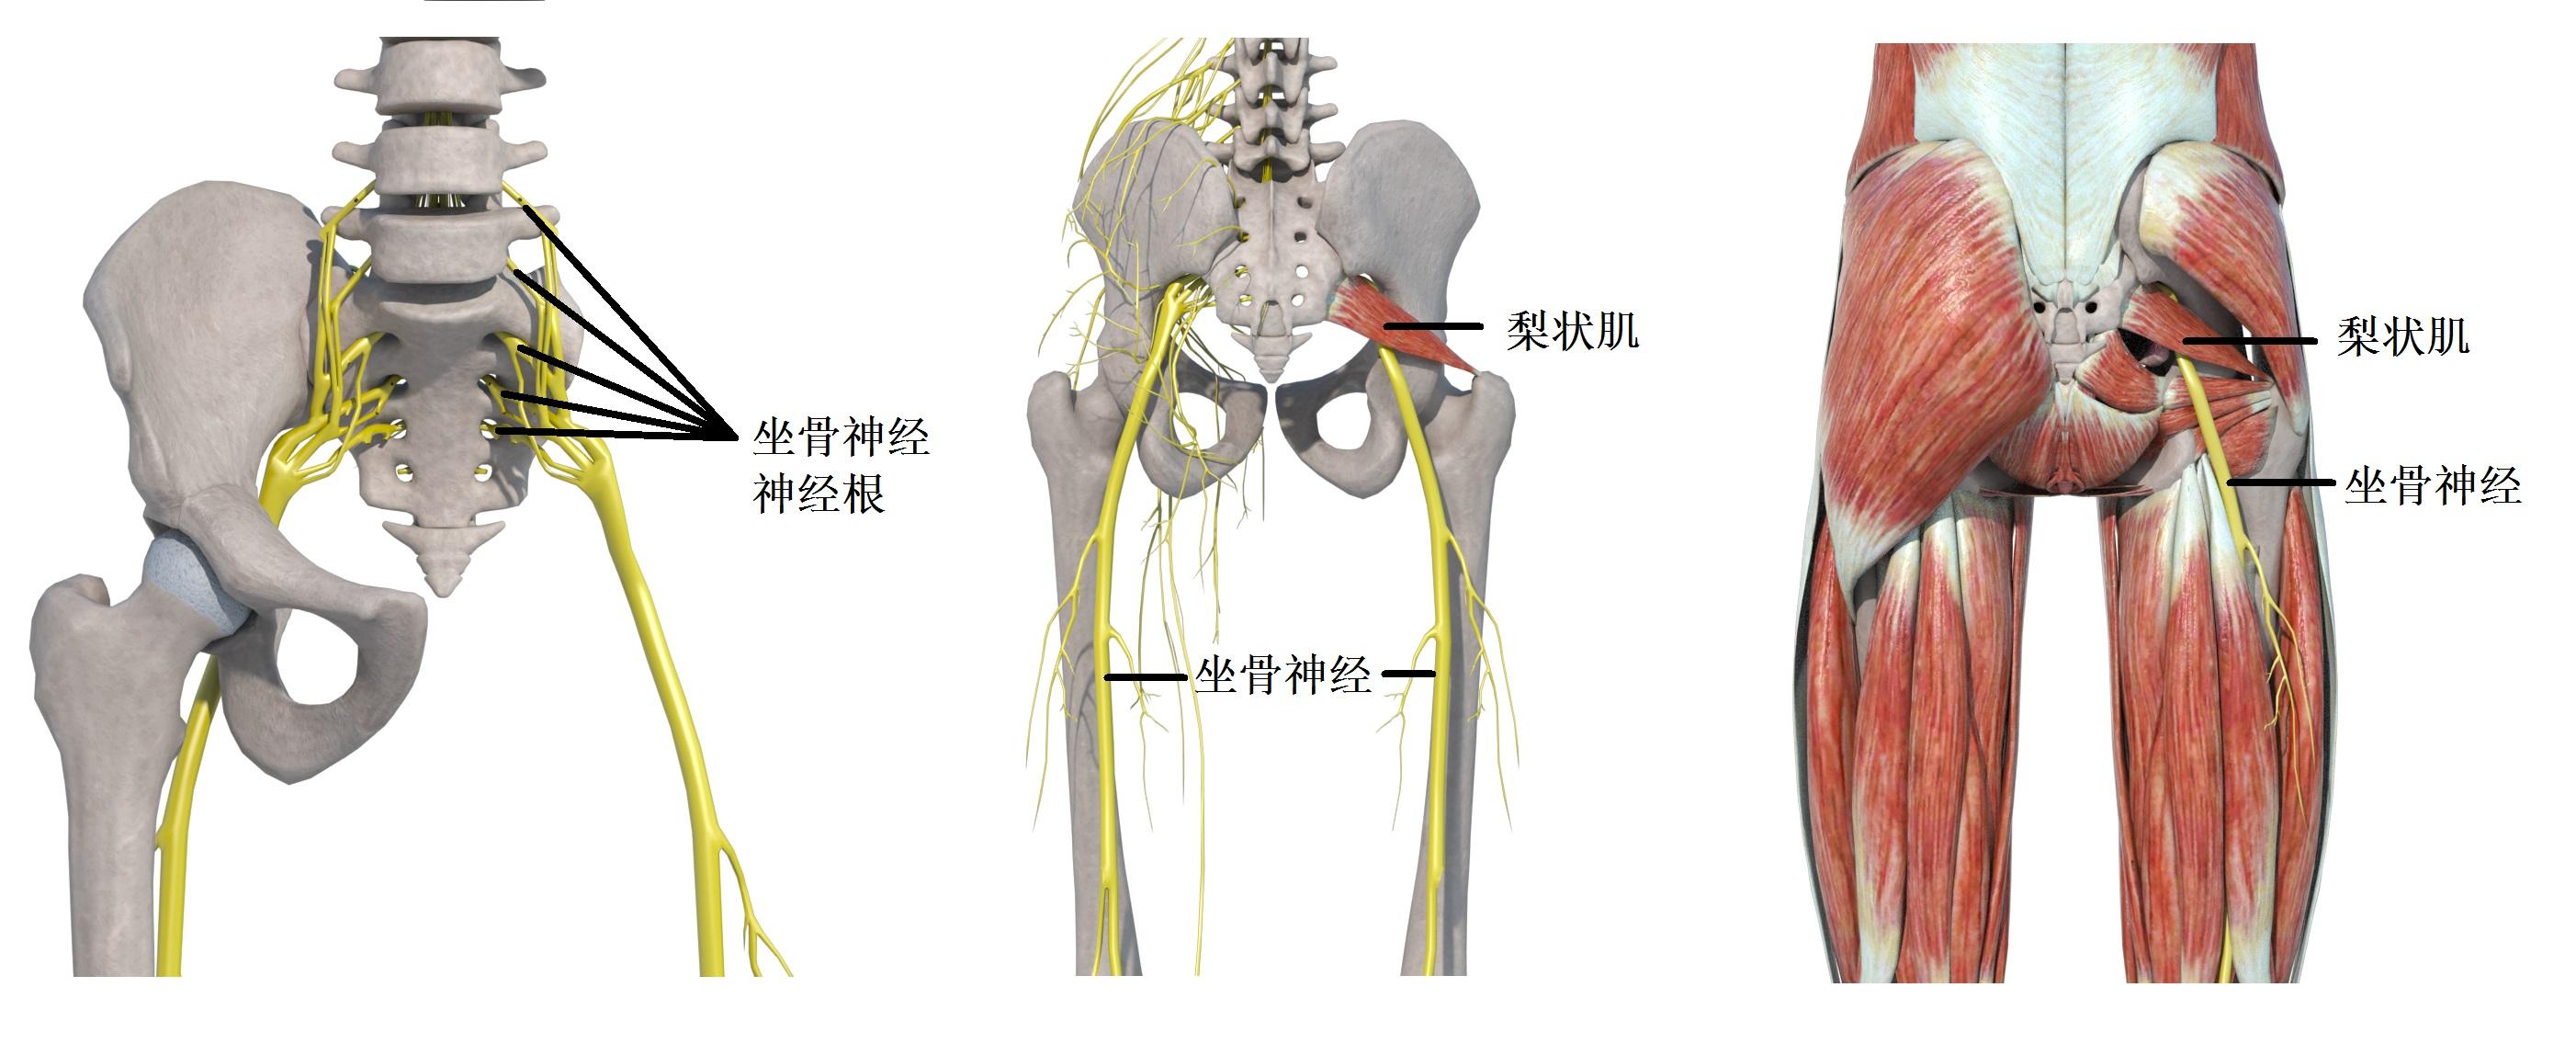 图5-1 坐骨神经和梨状肌解剖图5-2 梨状肌触诊与拉伸附.